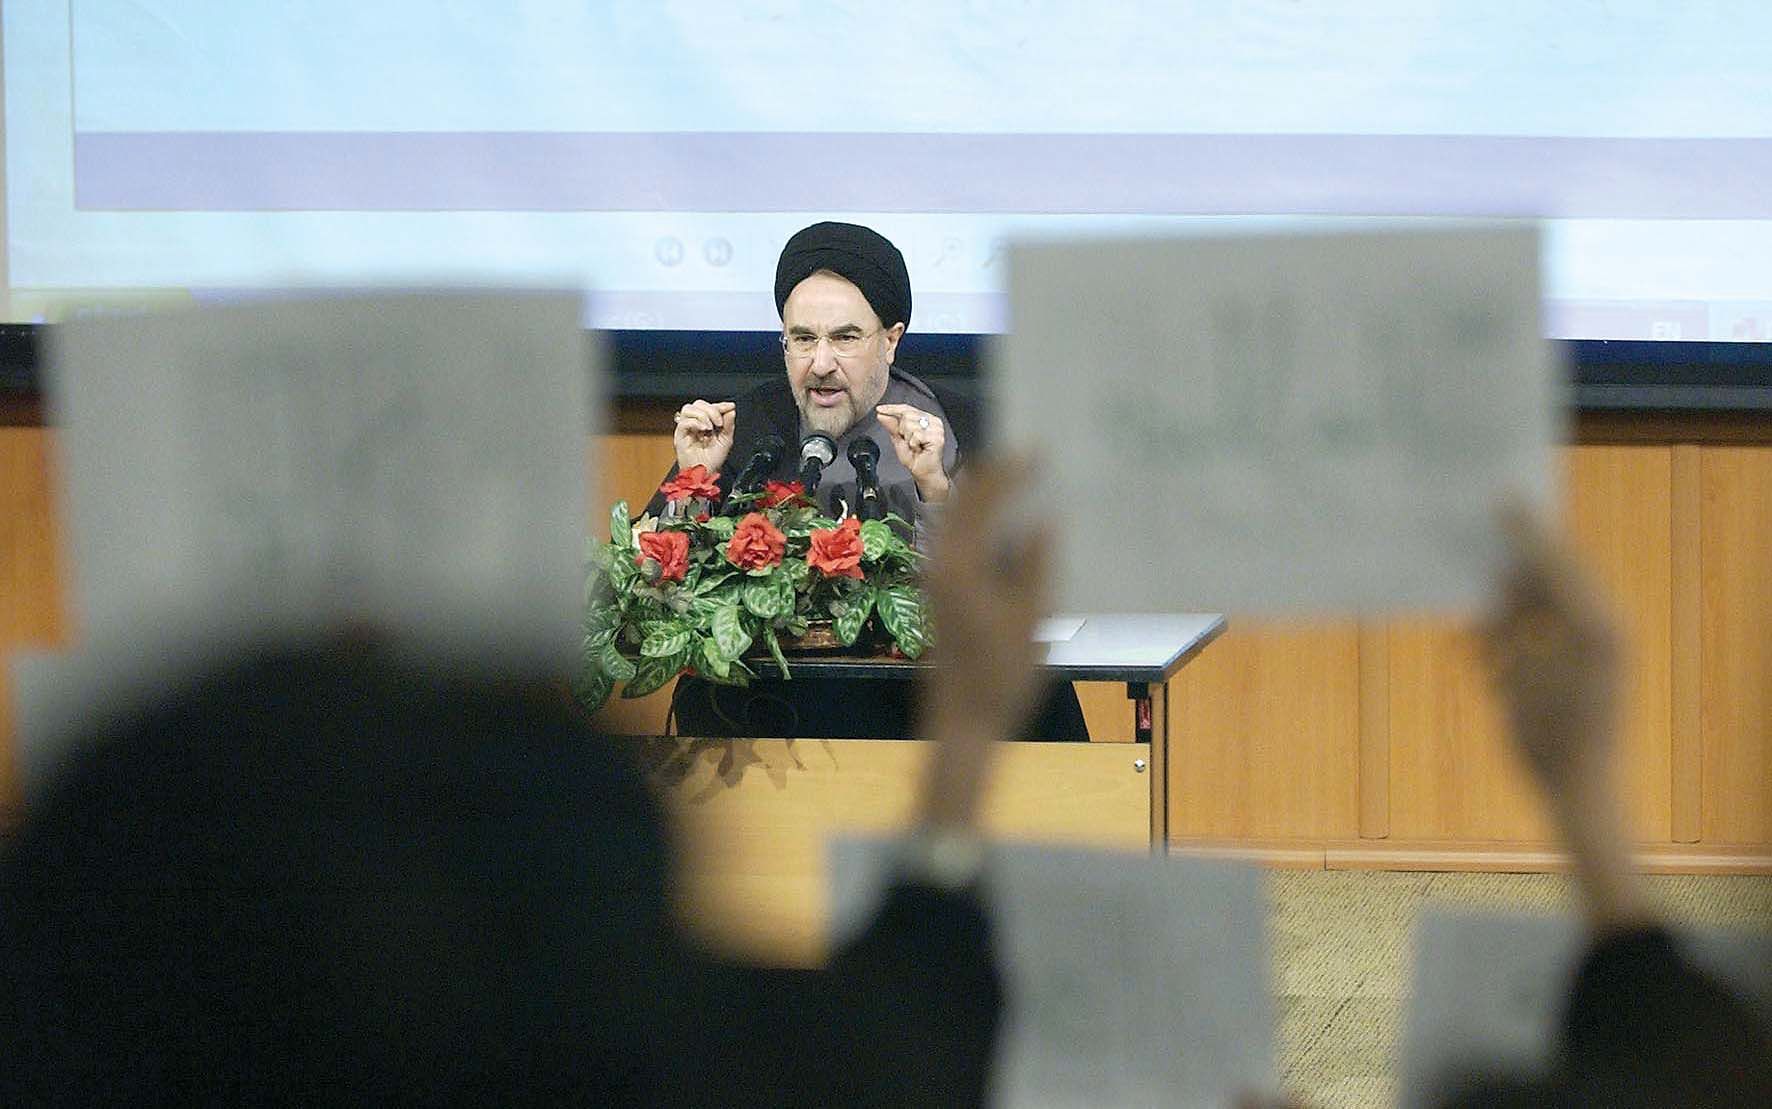 Mohammad_Khatami_speech_in_Faculty_of_Engineering_-_University_of_Tehran_-_December_6,_2004